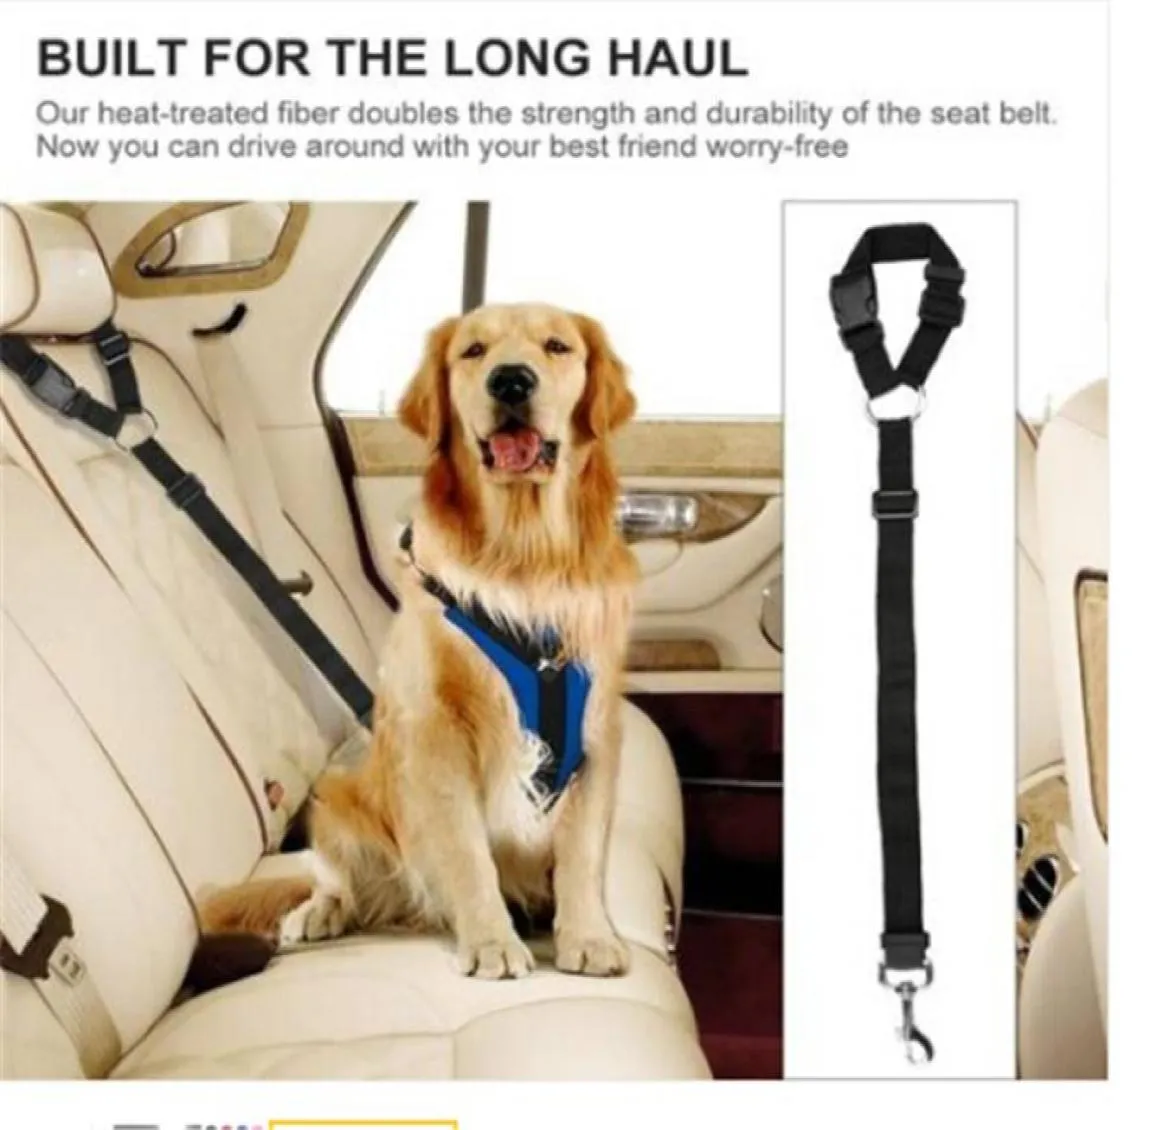 2018 cinturón de seguridad ajustable para perros arnés para perros cinturón de seguridad para vehículos para mascotas correa de seguridad para mascotas collares para perros correas 8668356